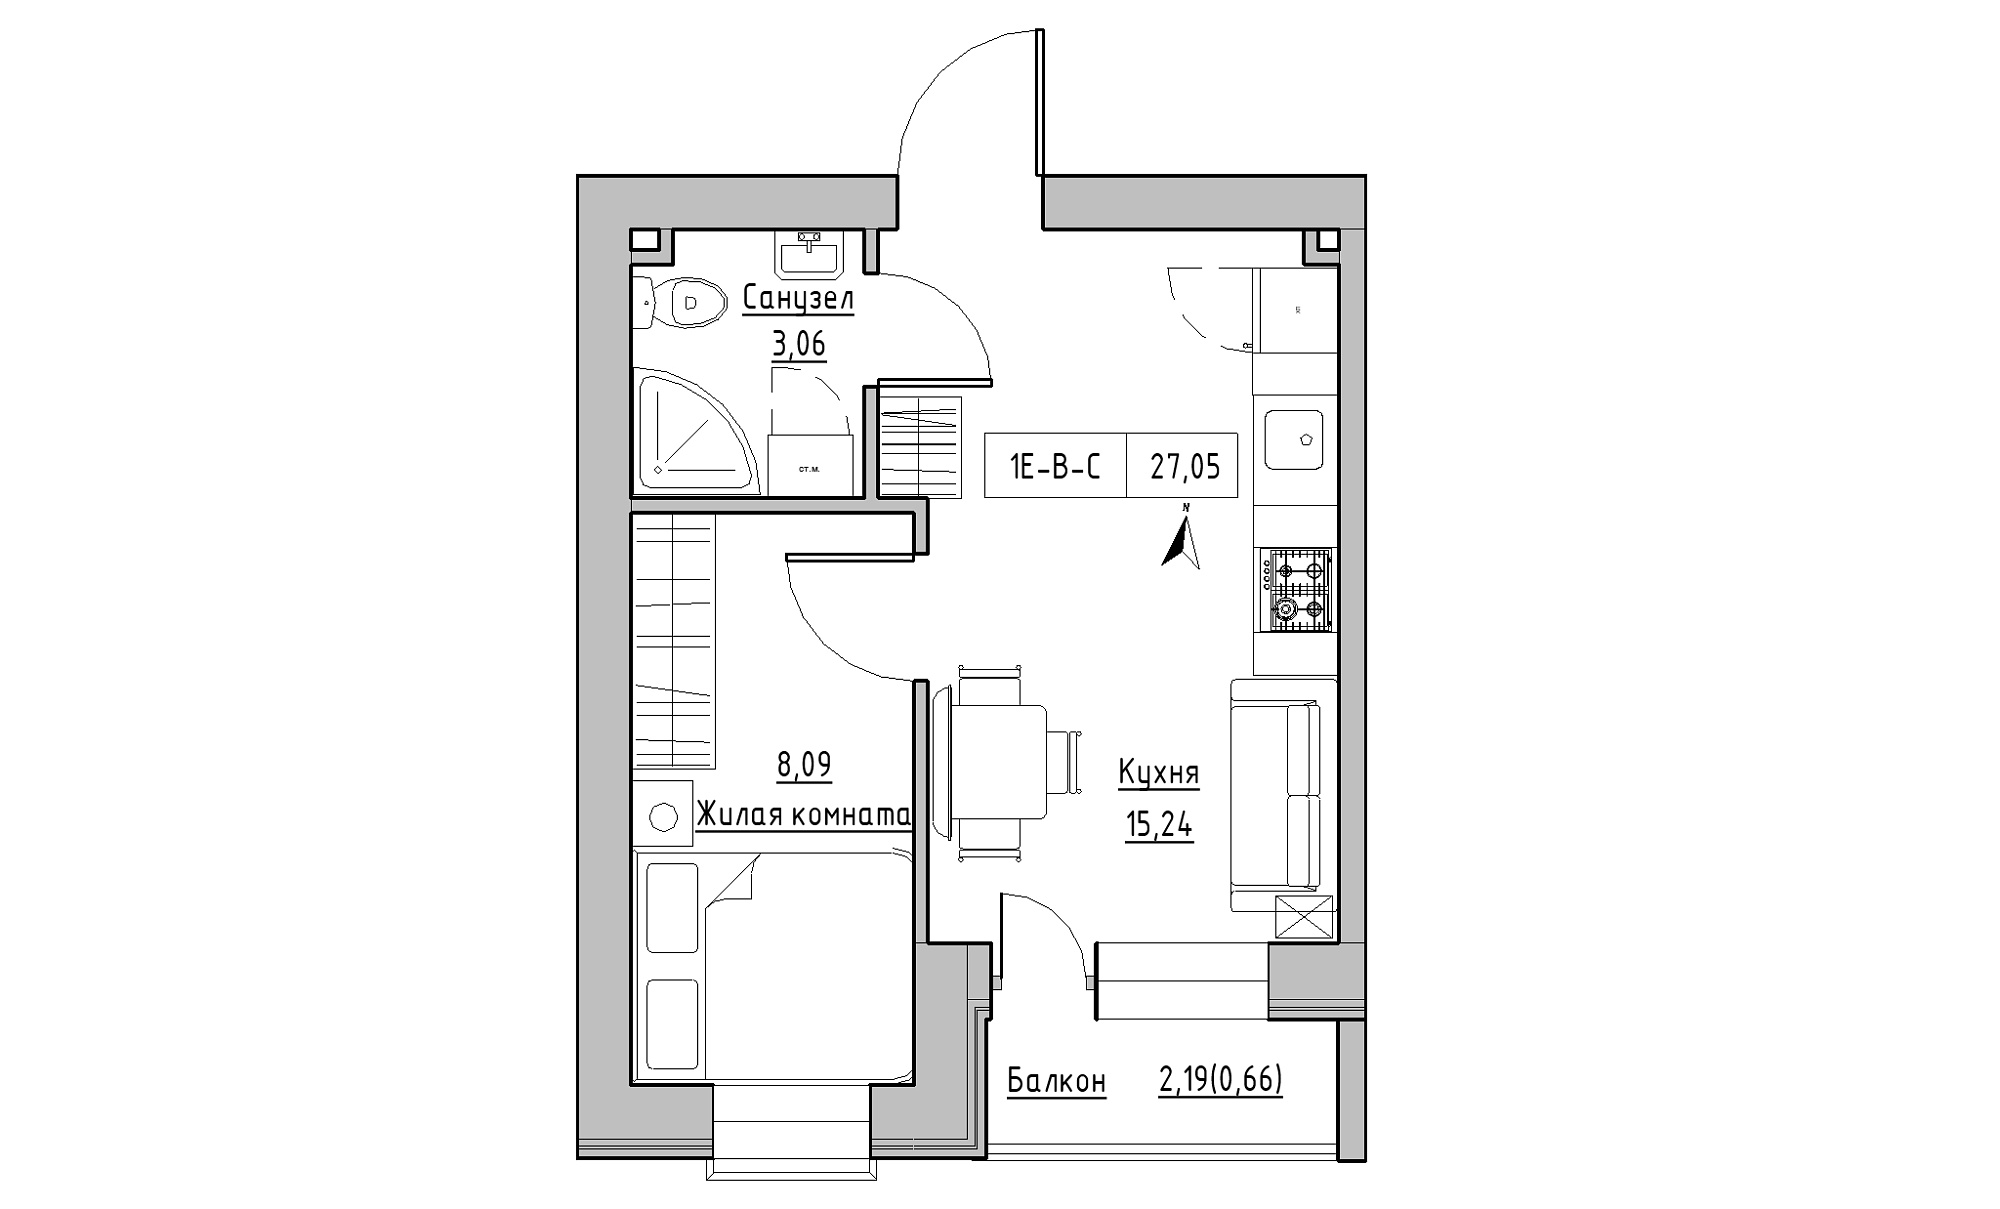 Планування 1-к квартира площею 27.05м2, KS-016-05/0008.